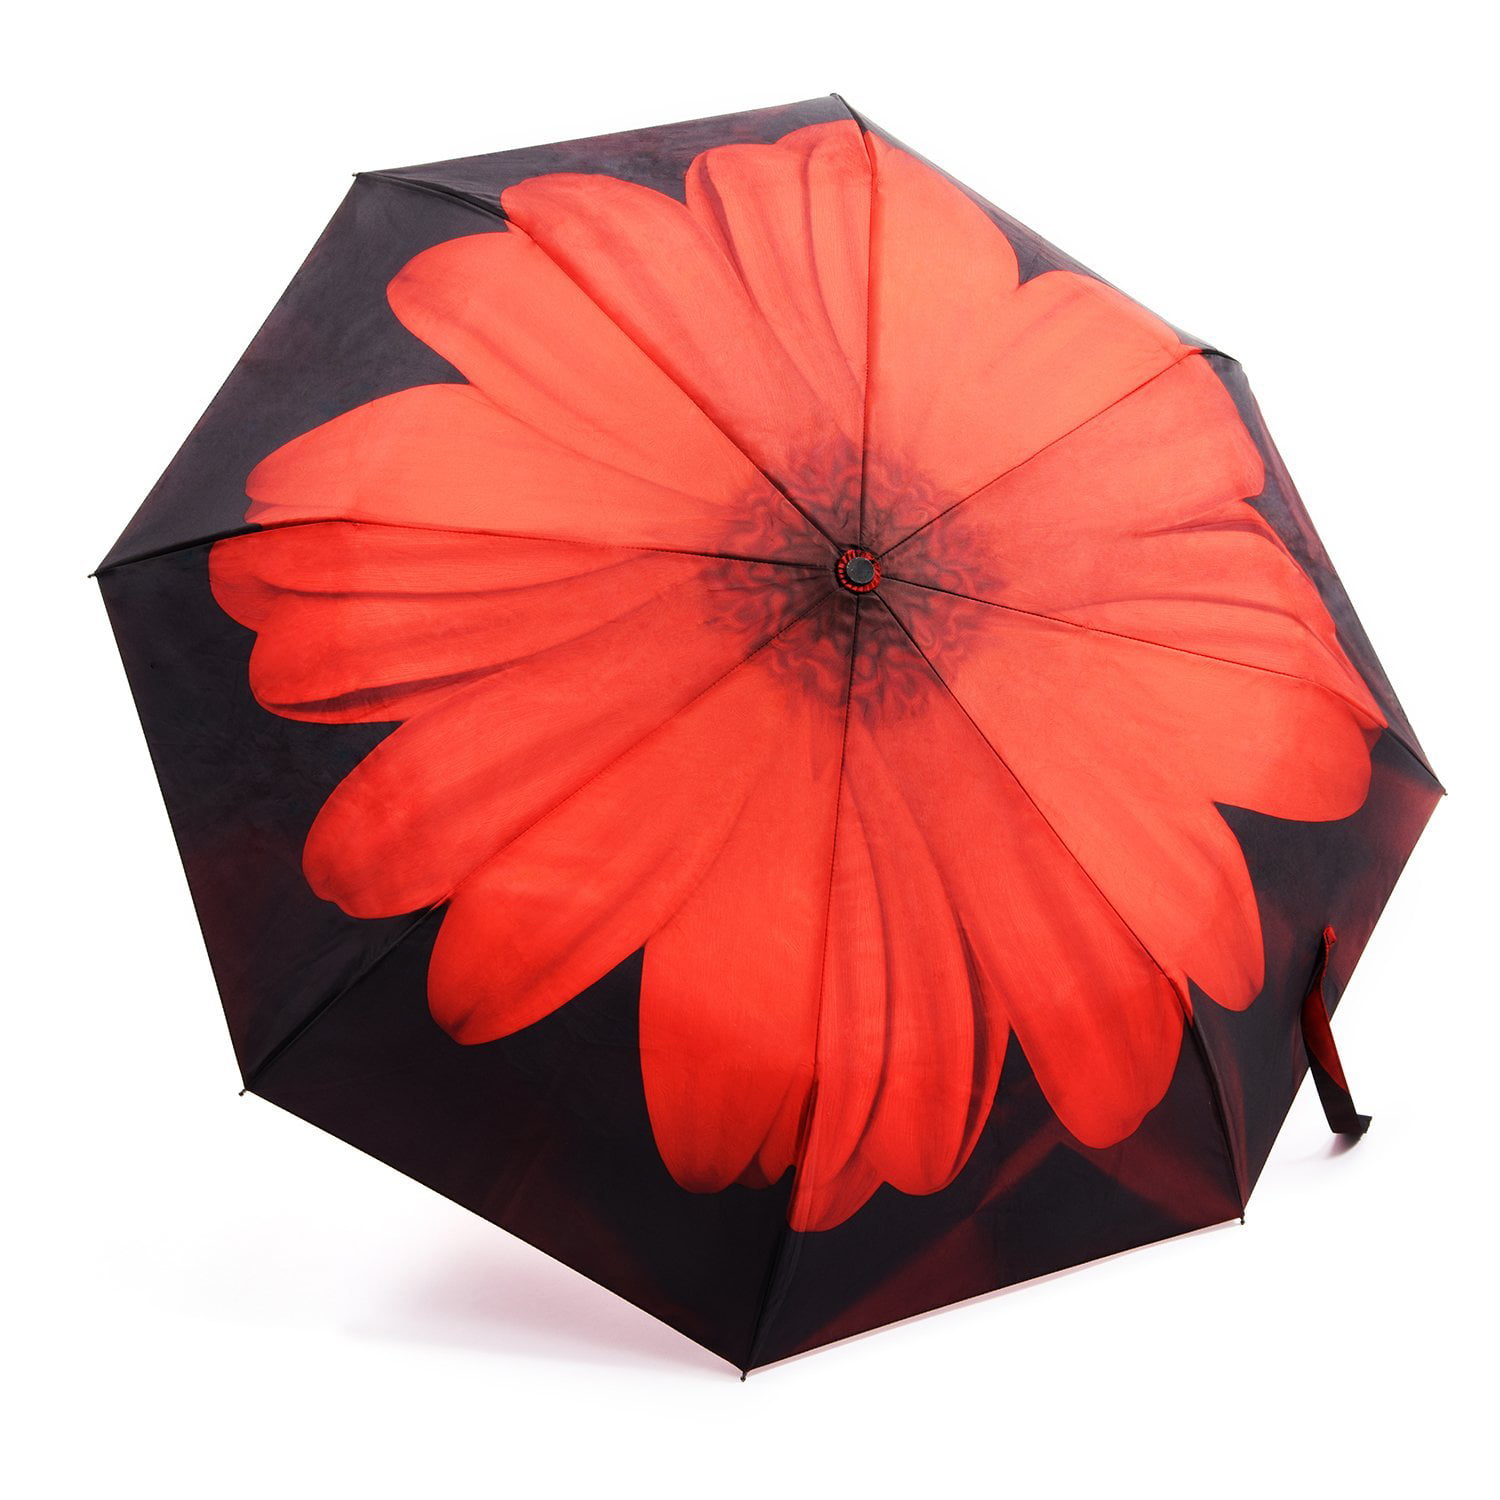 Ladies Premium Compact Umbrella Windproof Automatic with Rose Design & Gift Box 